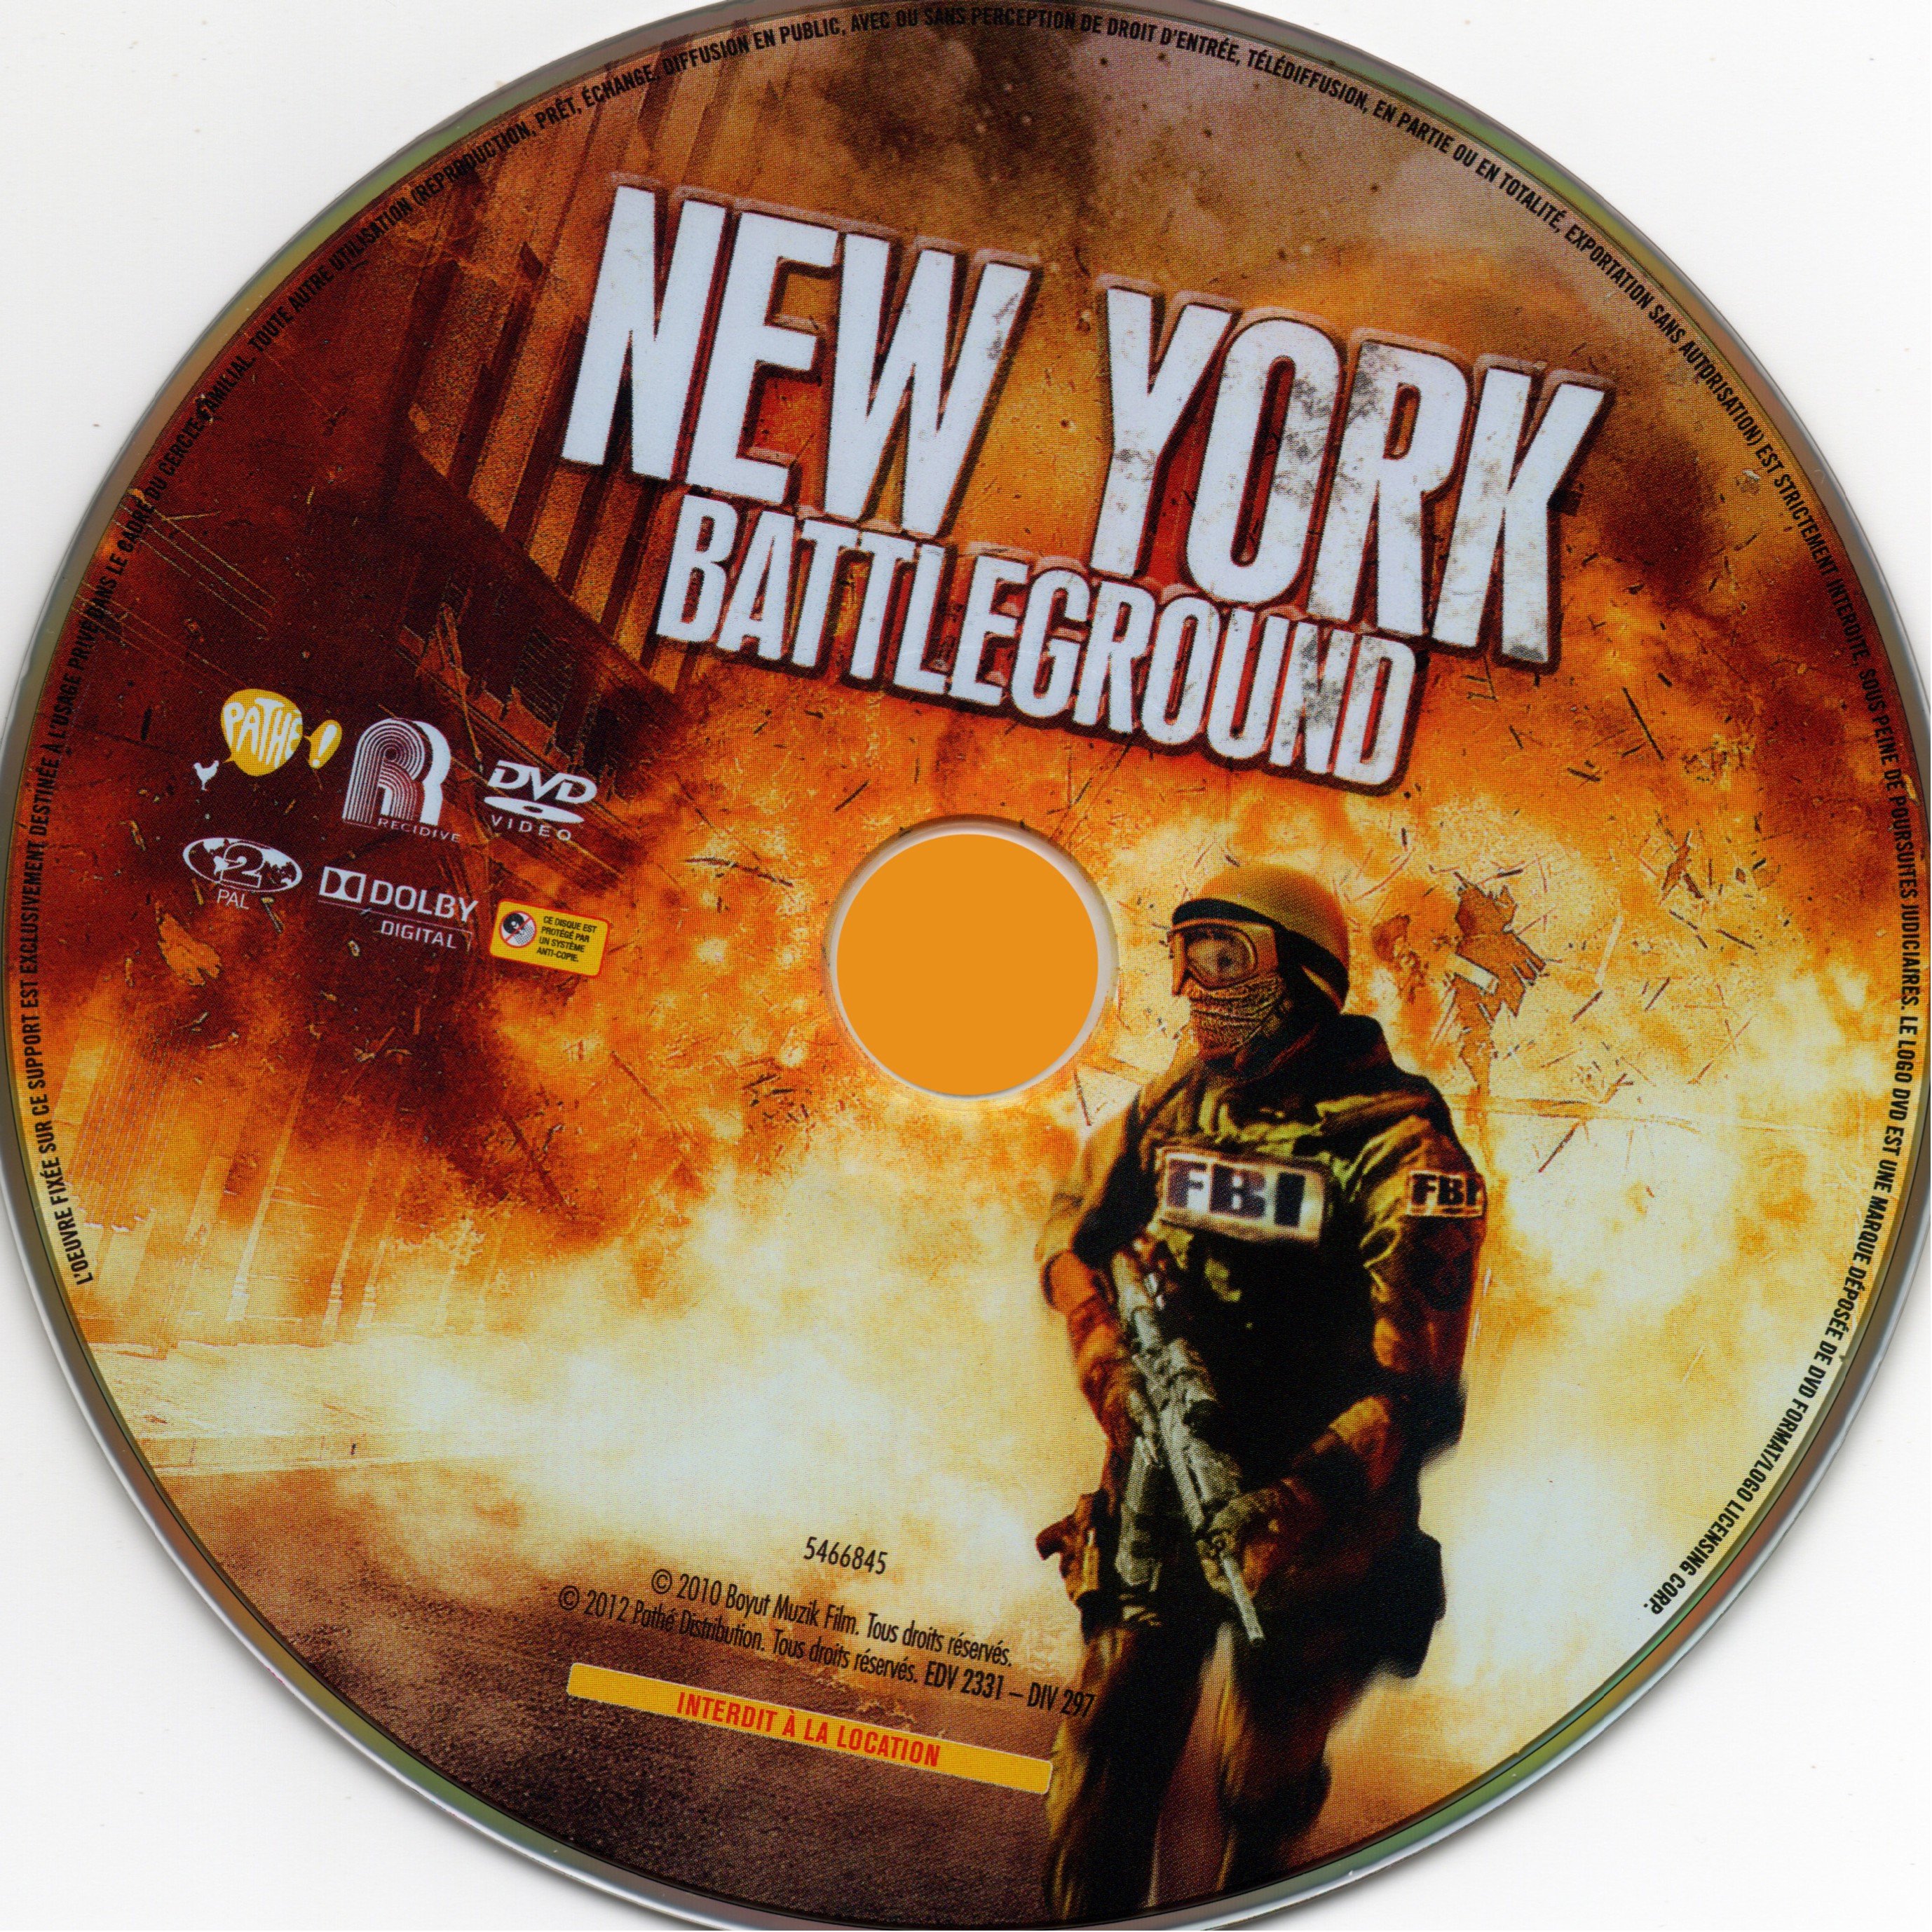 New york battleground